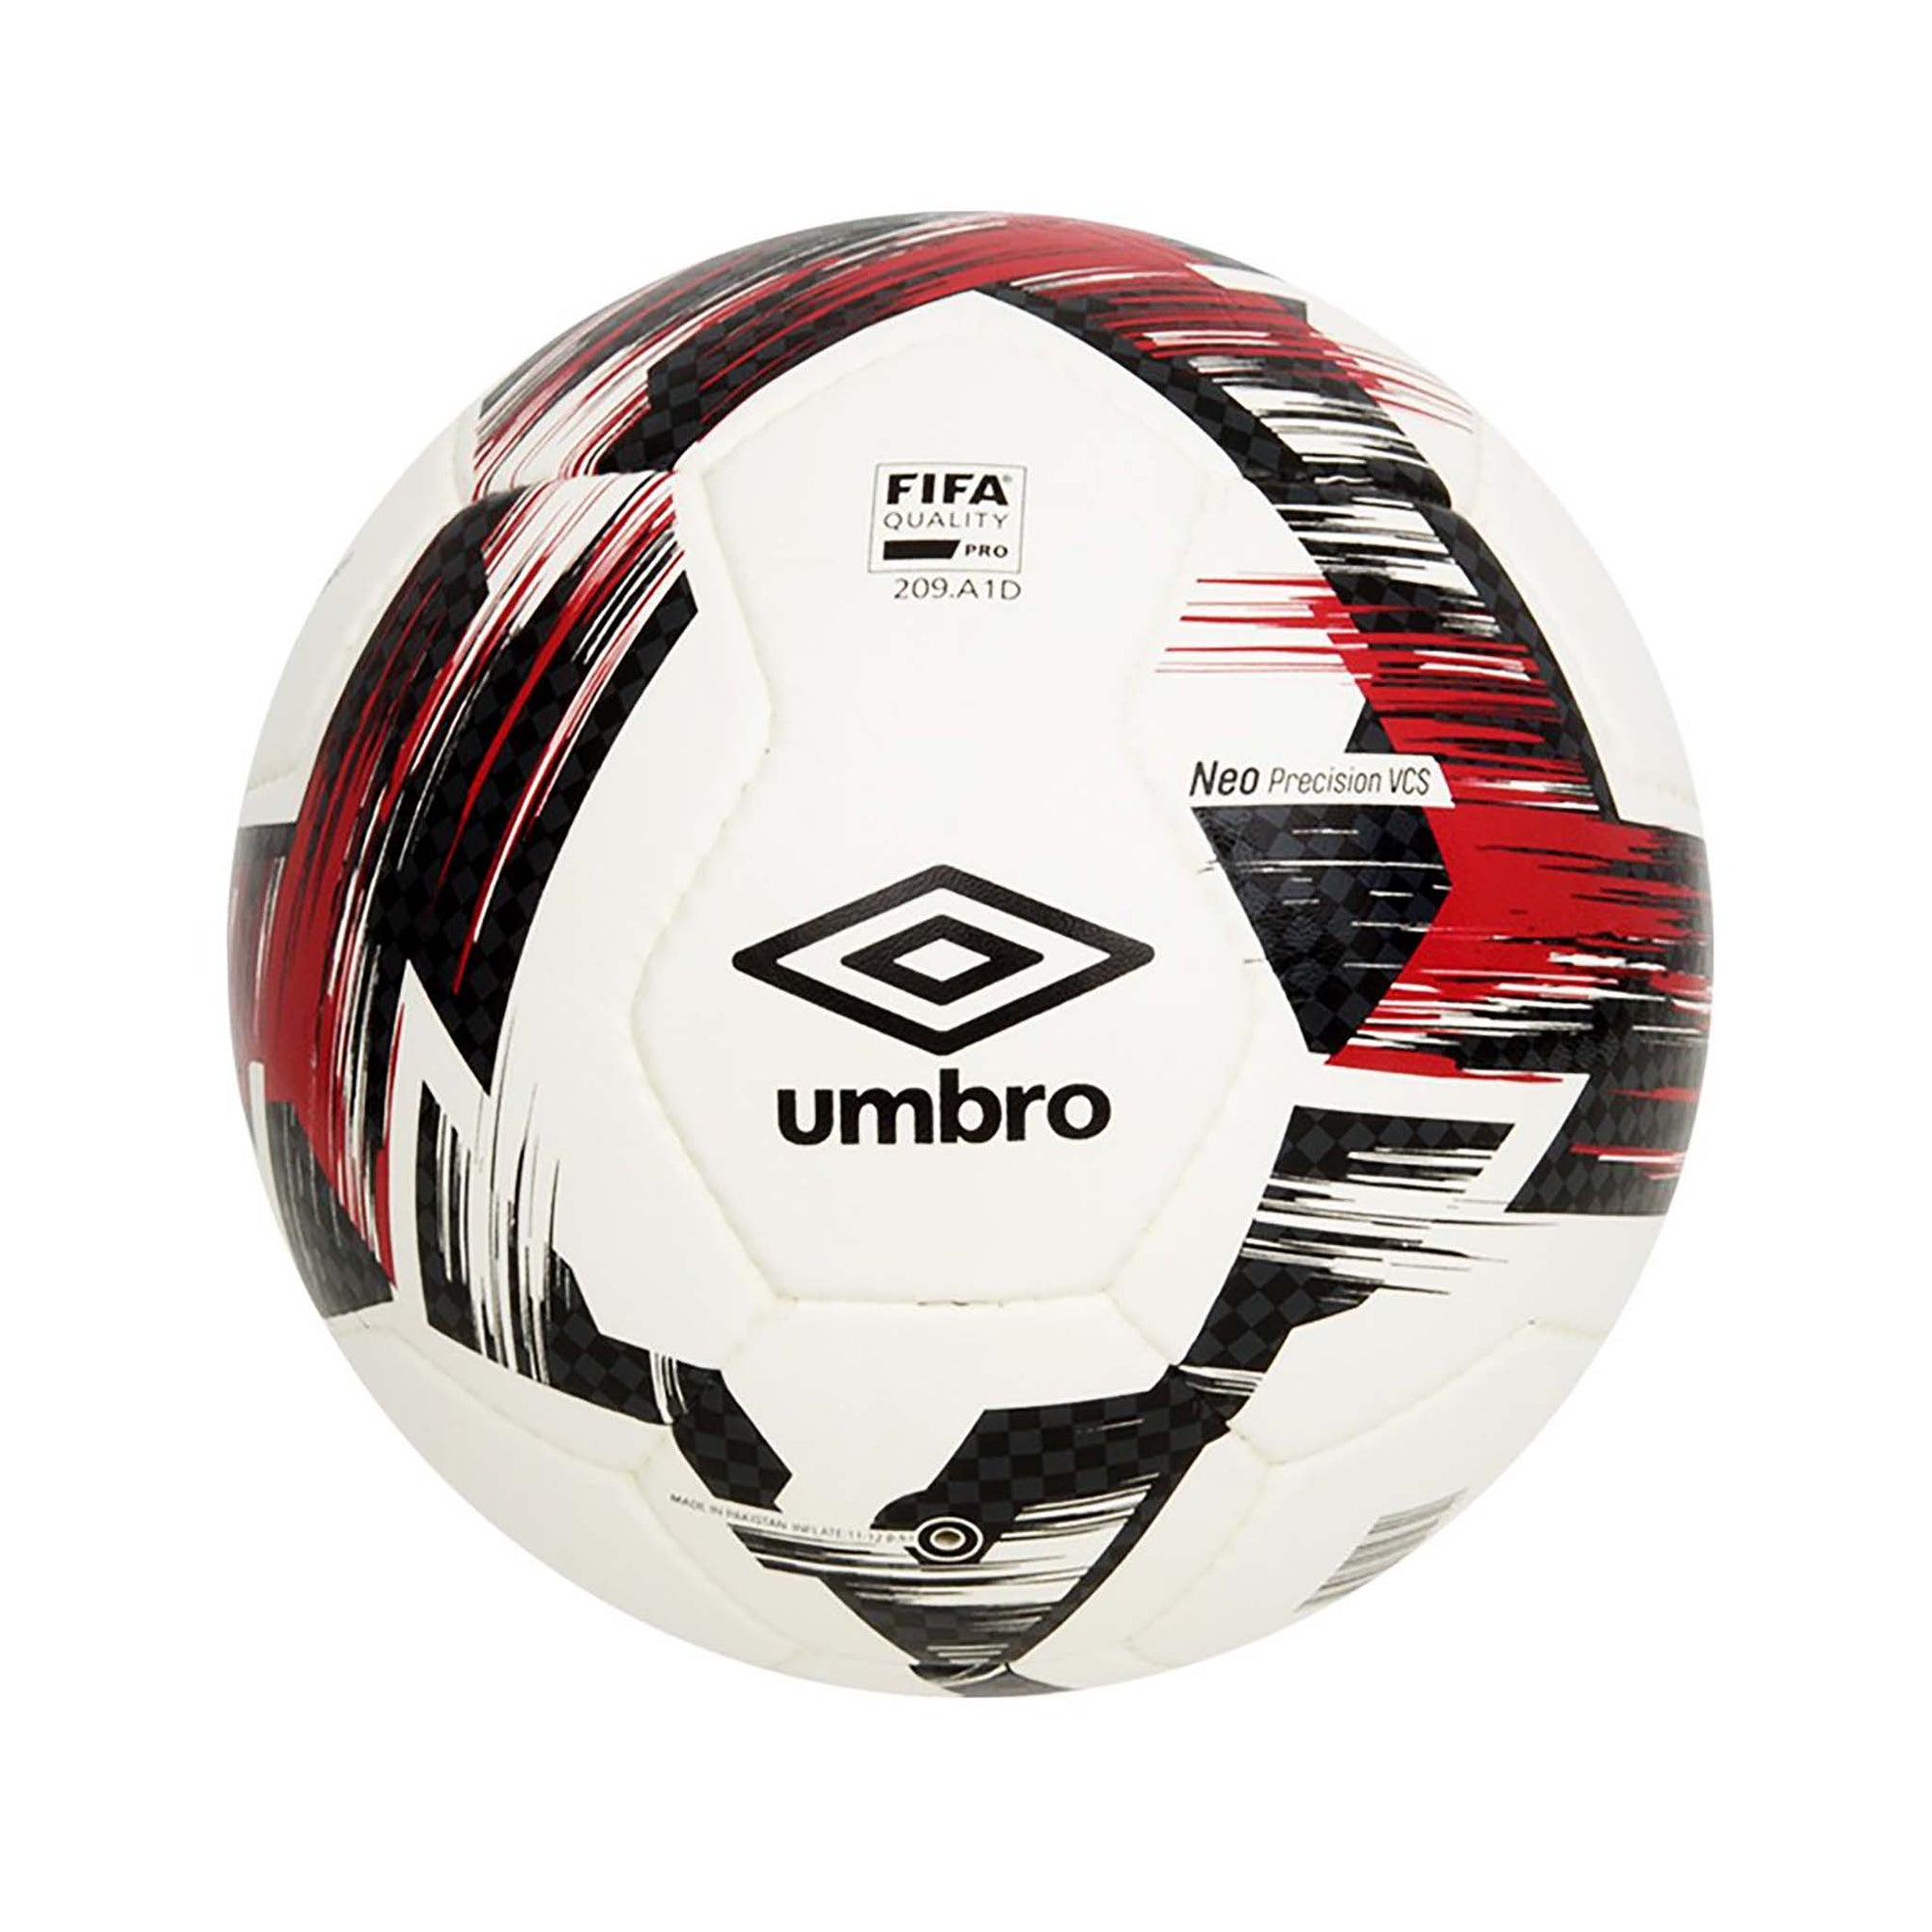 Umbro Neo Precision ballon de soccer